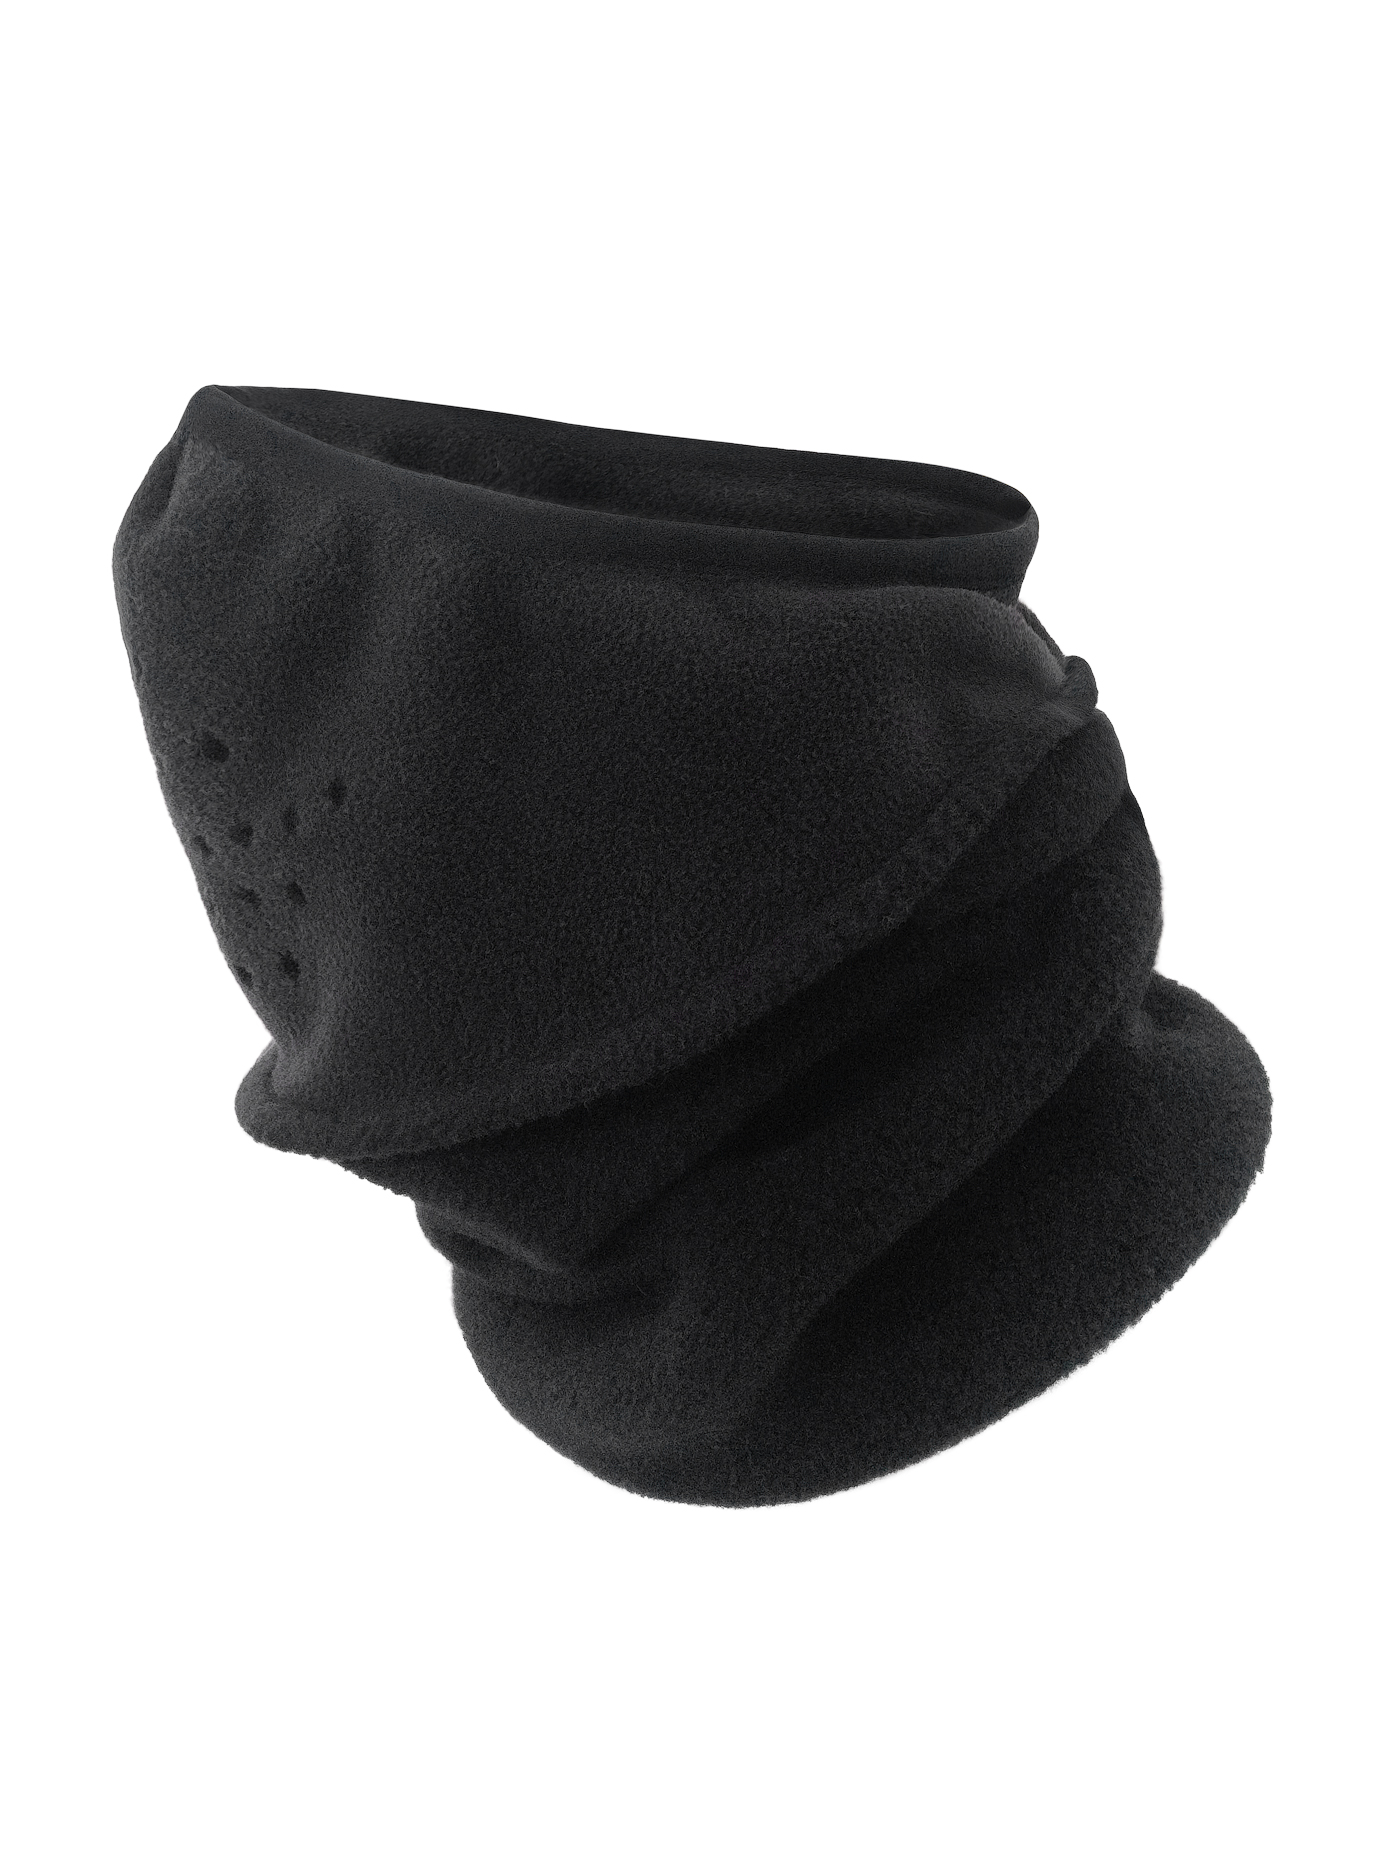 Шапка-маска BASK, размер XL, цвет черный 1203-9009-XL NOWIND MASK - фото 3